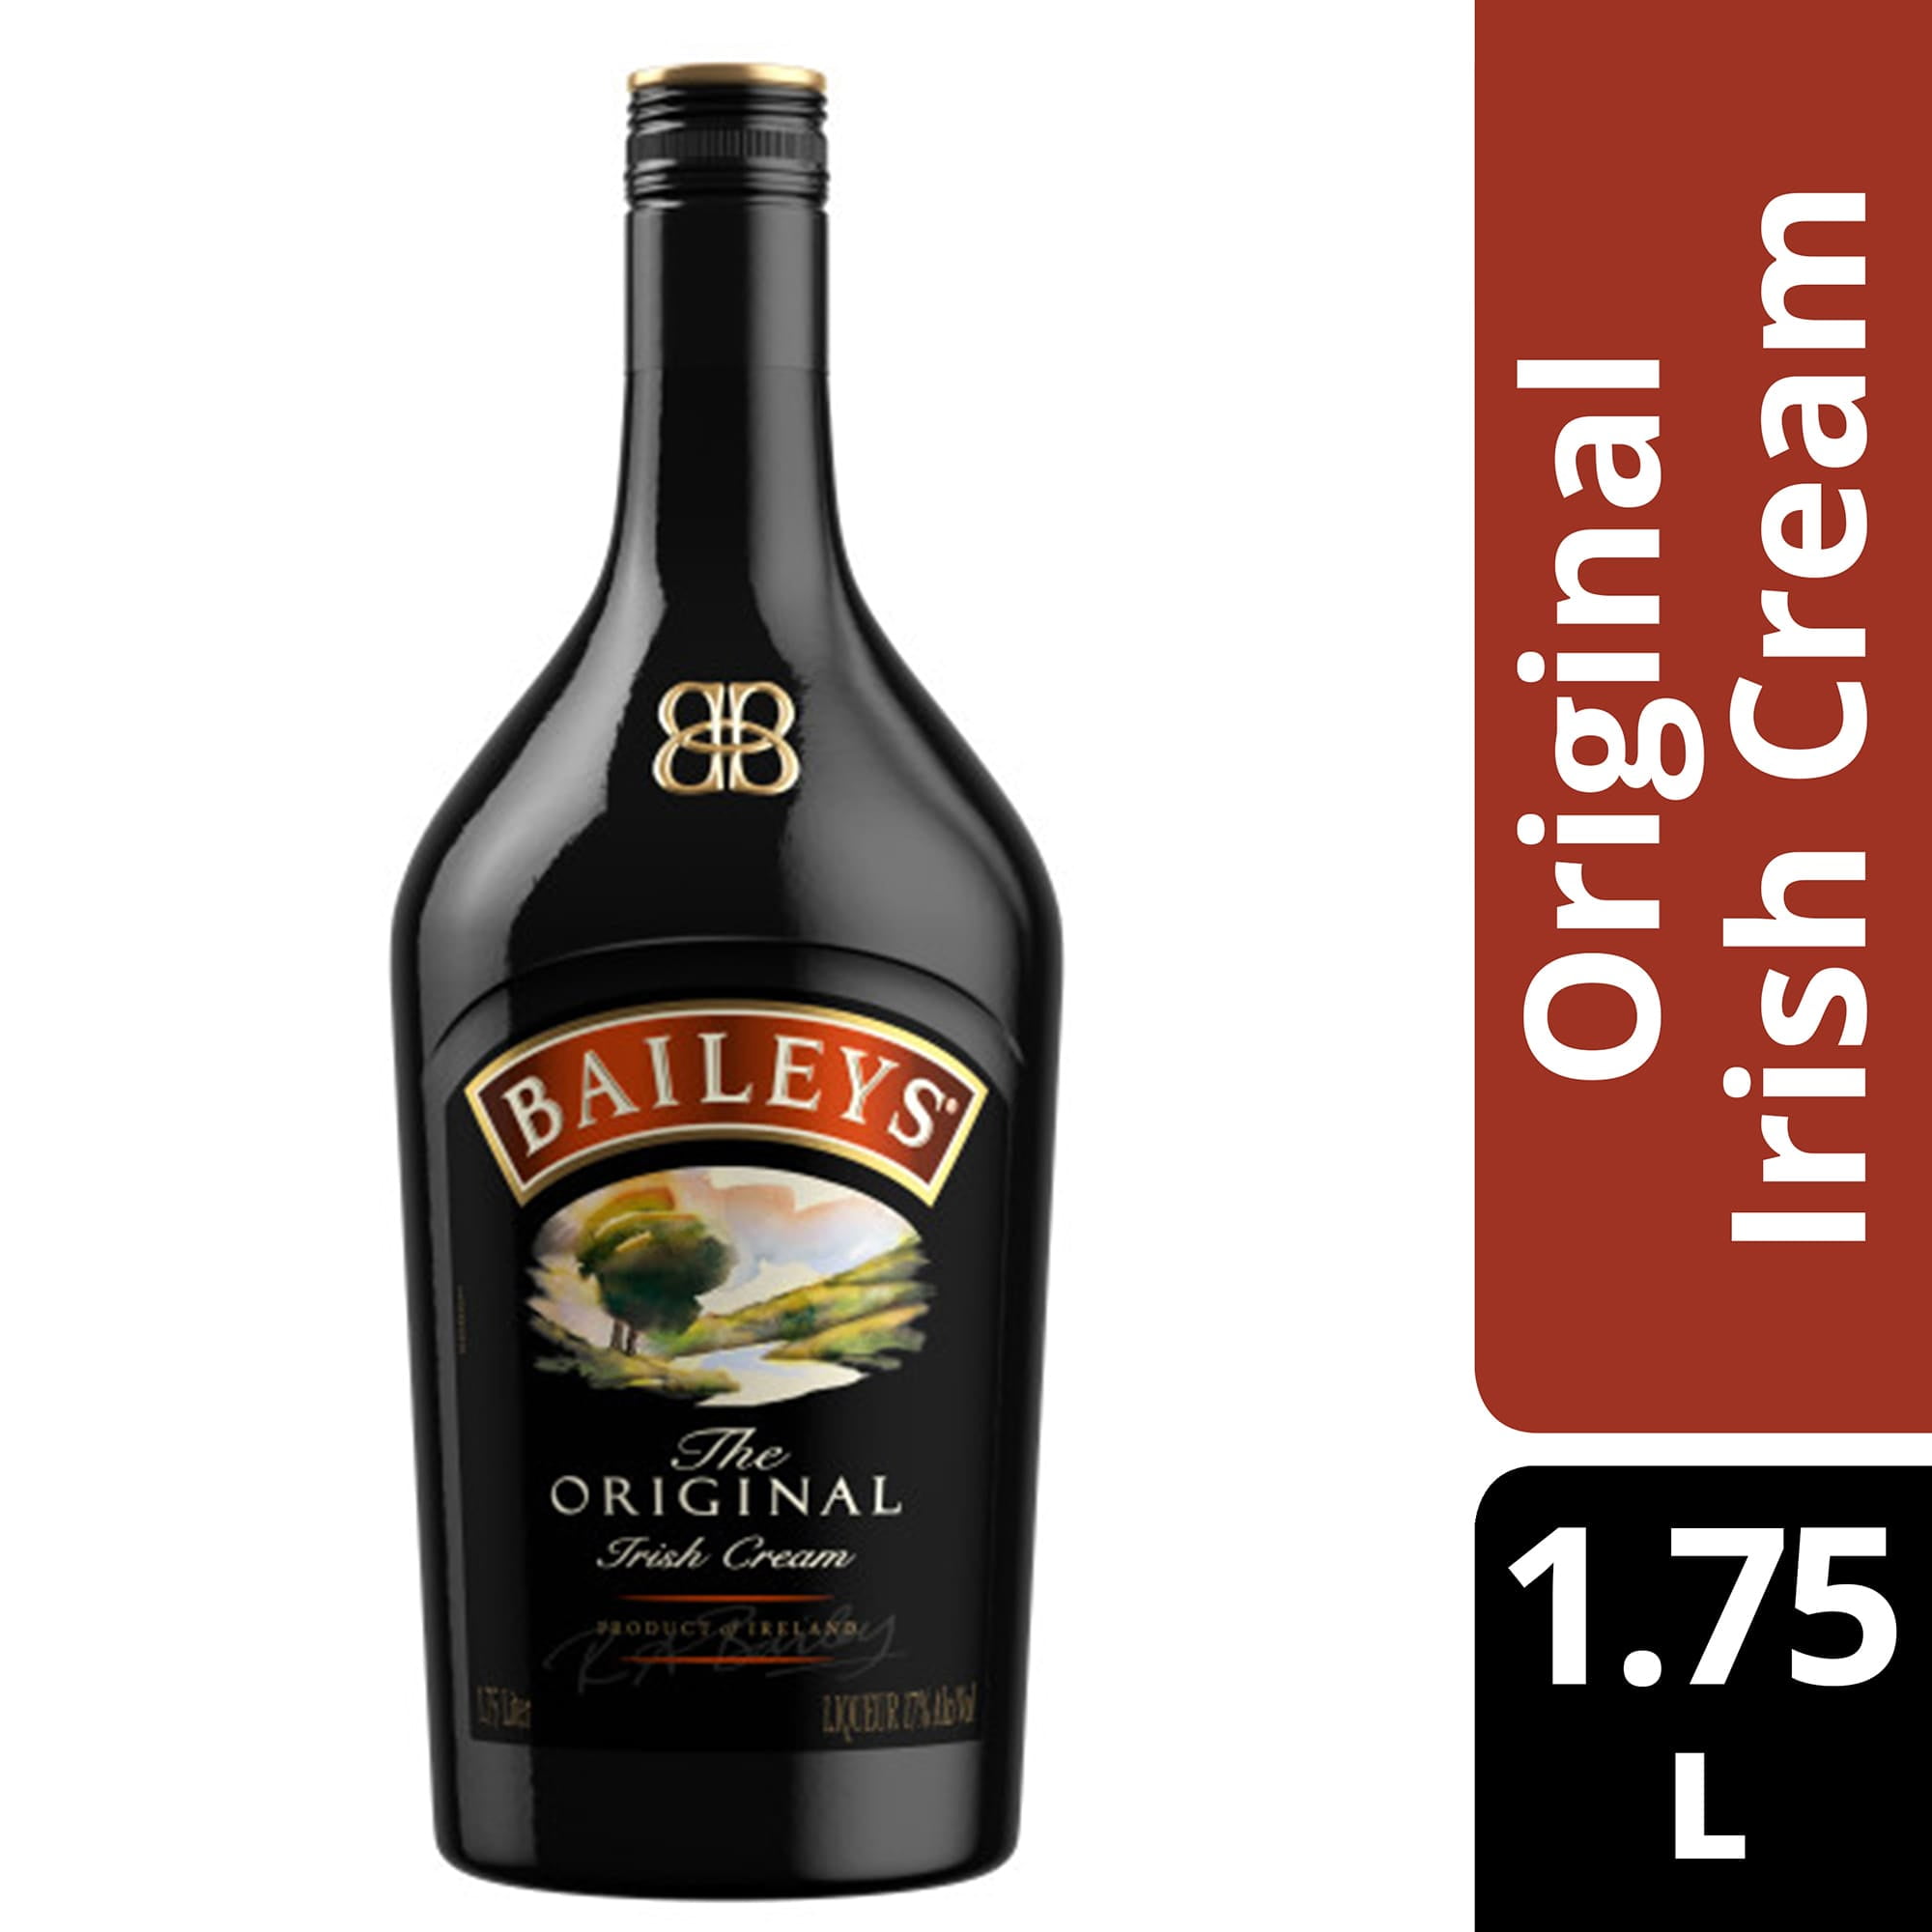 Baileys Irish Cream - Wikipedia